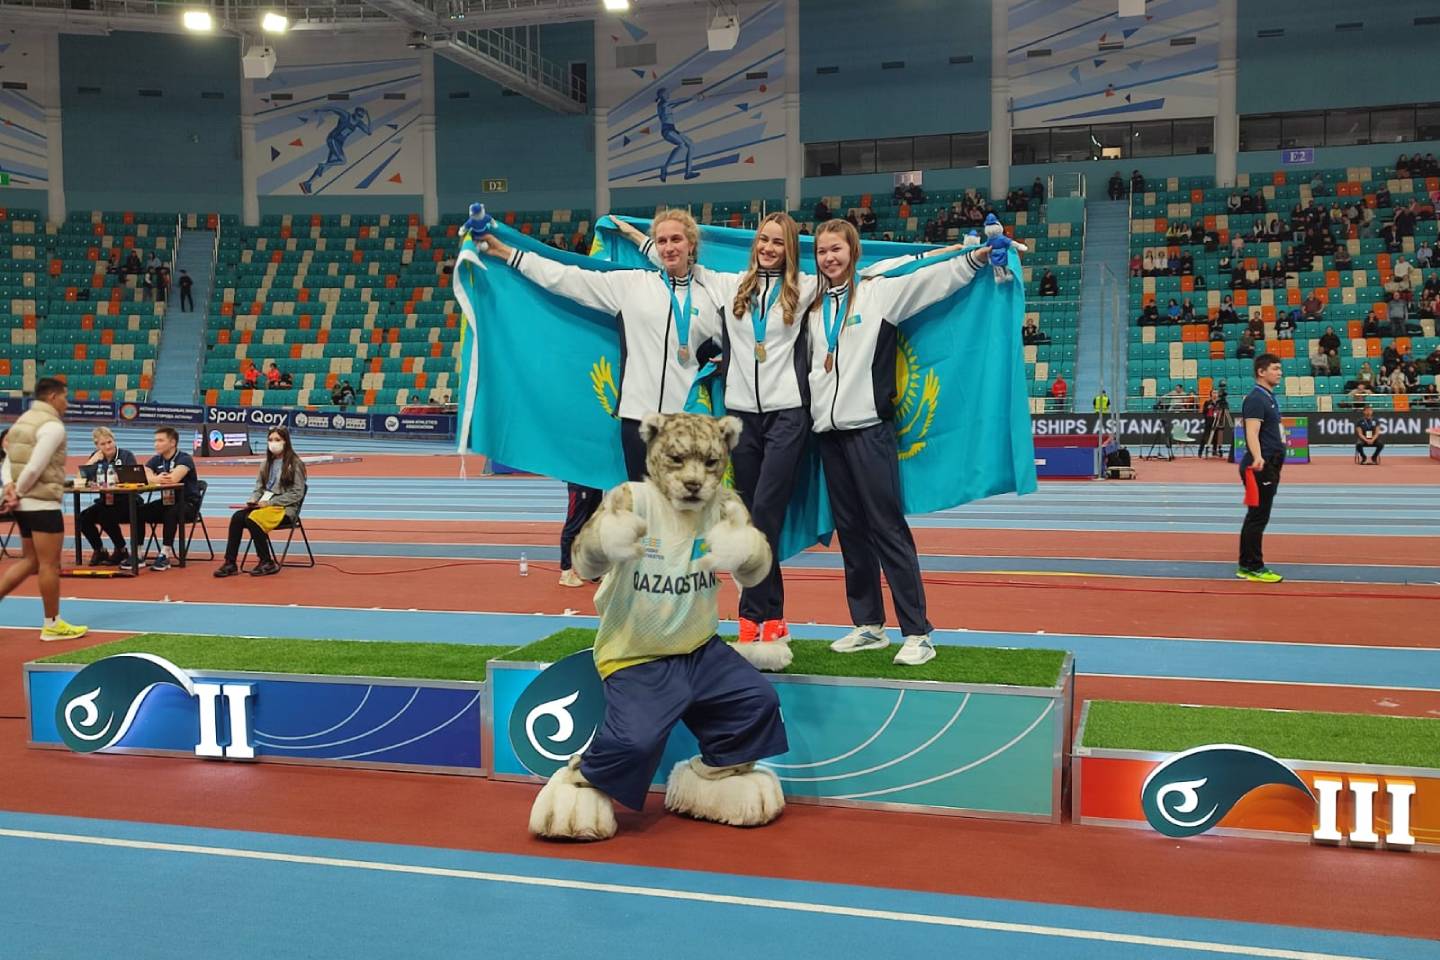 Новости спорта / Новости спорта в мире и Казахстане / Казахстанские легкоатлеты заняли второе место на Чемпионате Азии